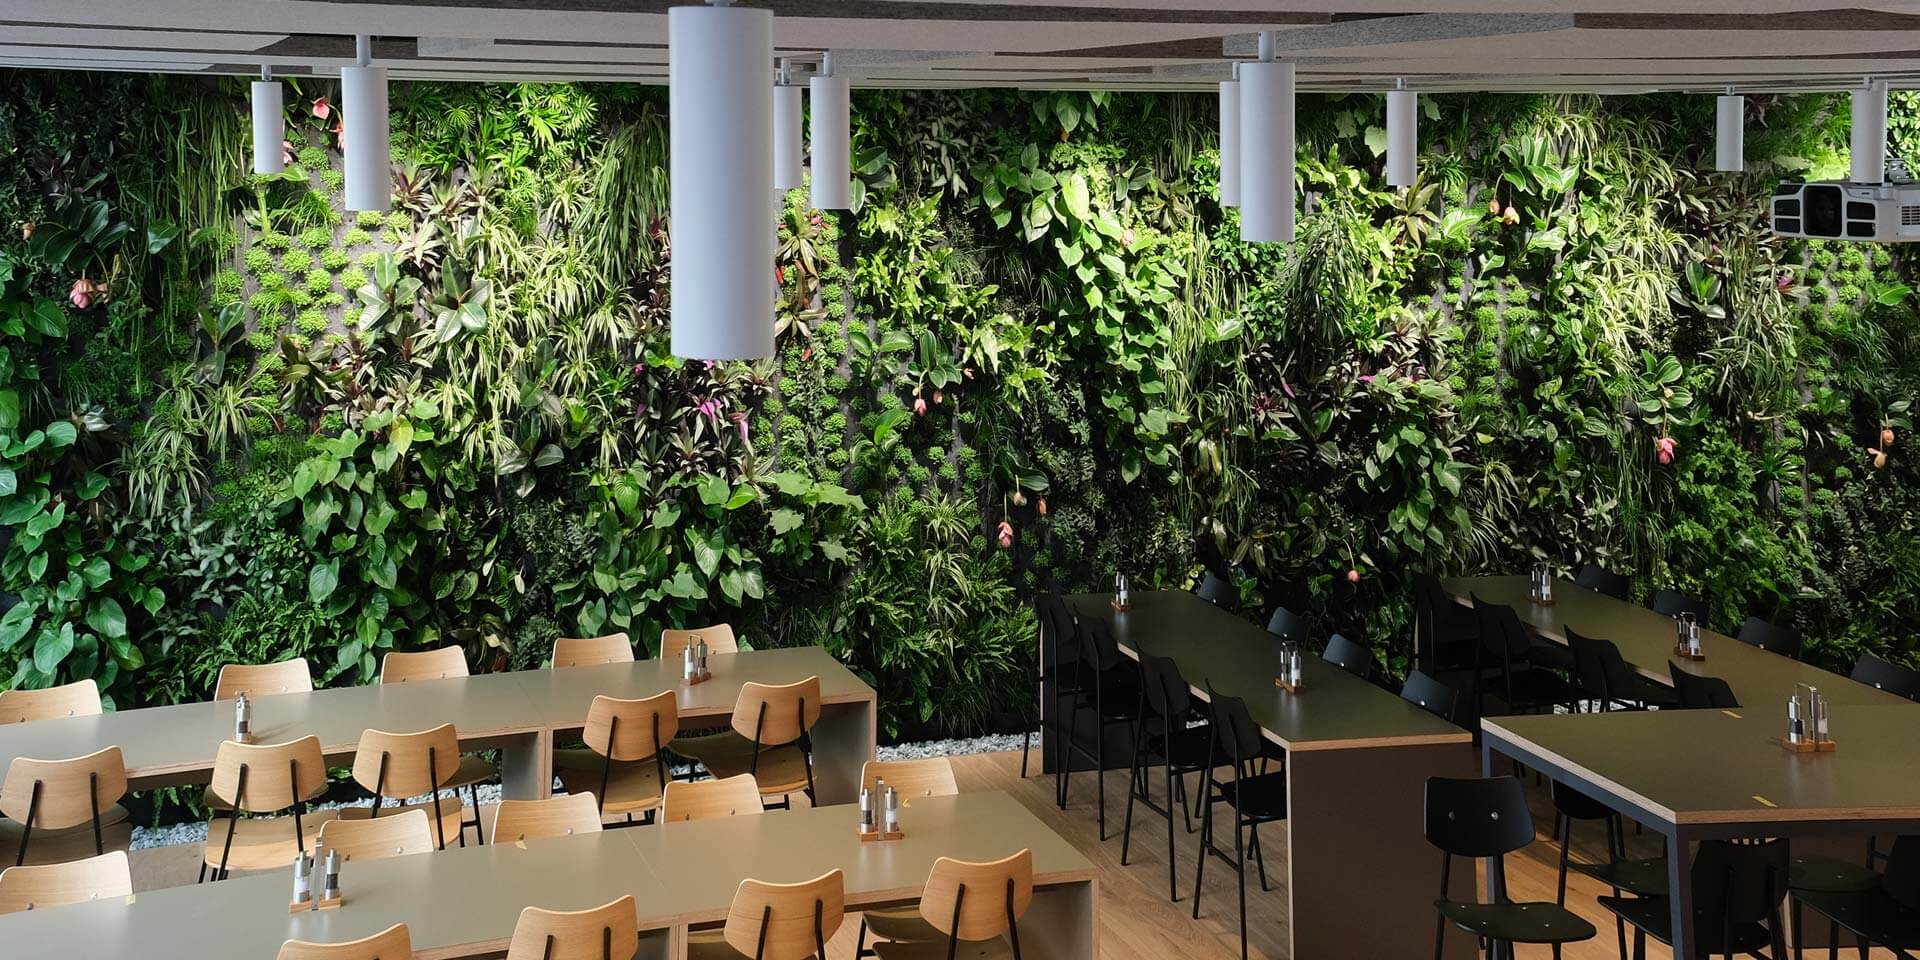 Interior de um café moderno com uma grande *parede de plantas da Vivit – fabricante suíça* nas paredes, com mesas de madeira, cadeiras pretas e iluminação suave.